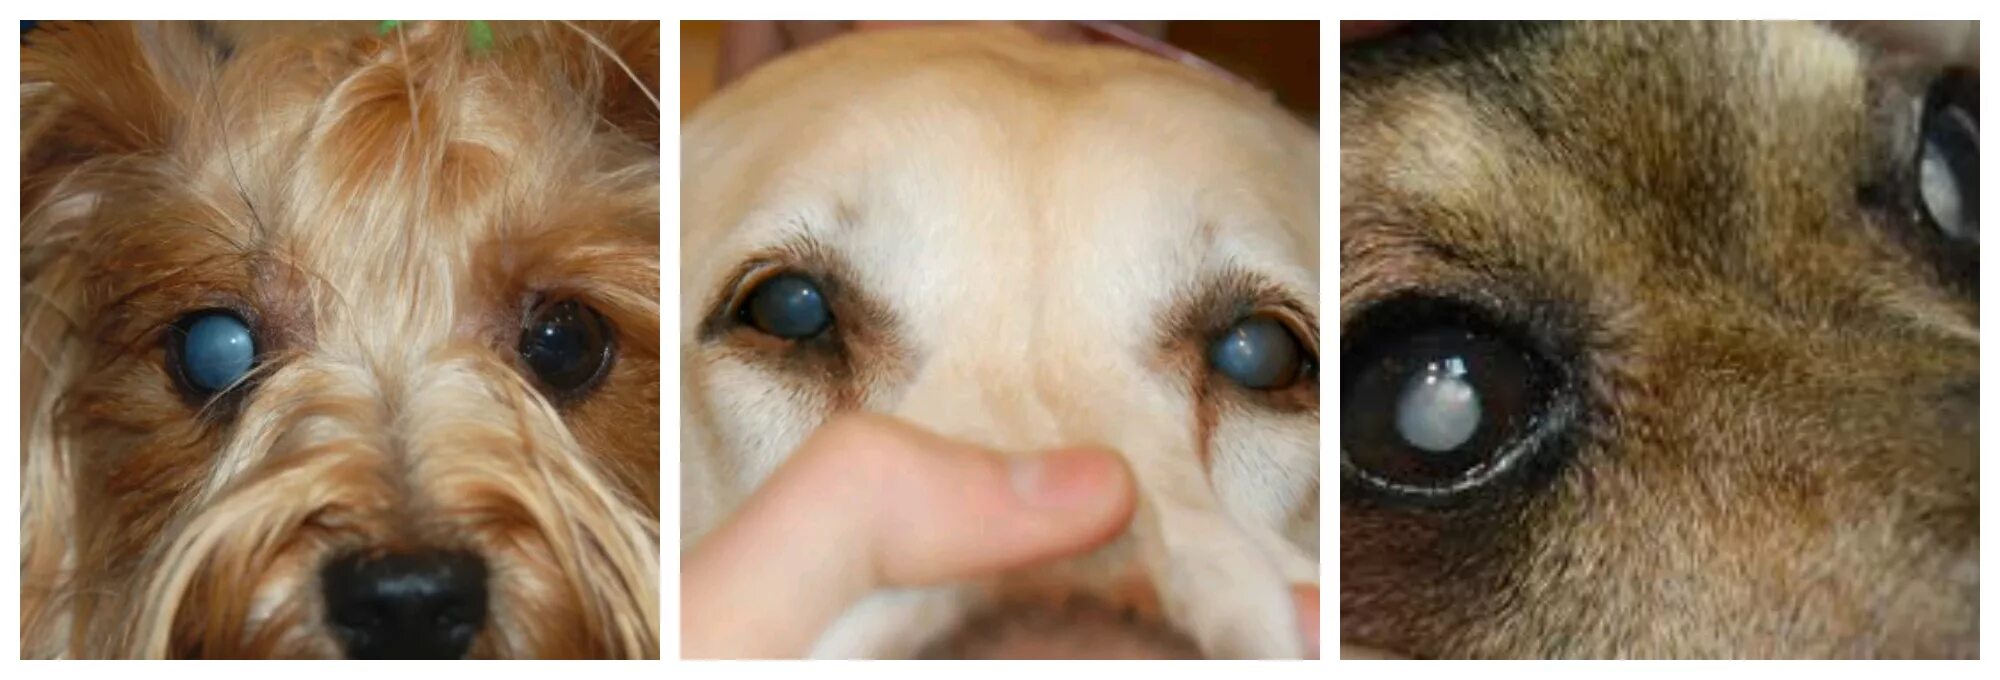 У щенка текут глаза